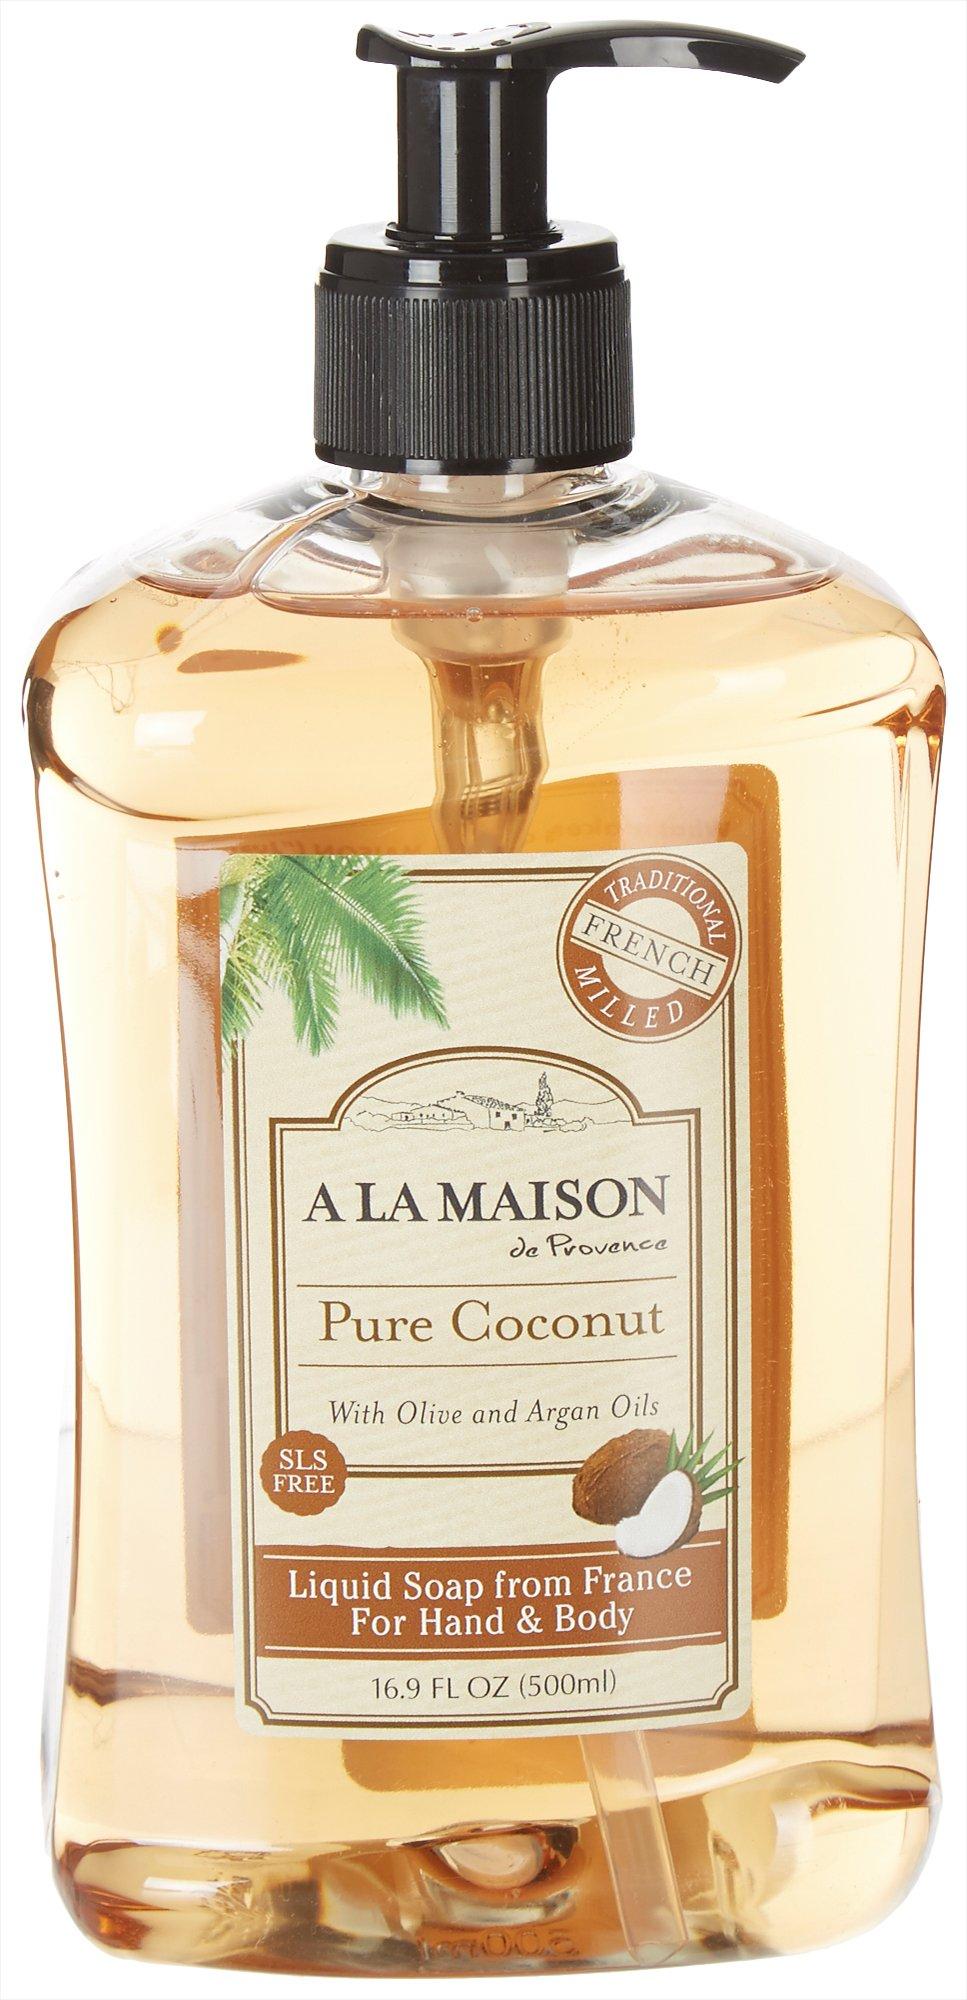 A La Maison Pure Coconut Hand & Body Liquid Soap